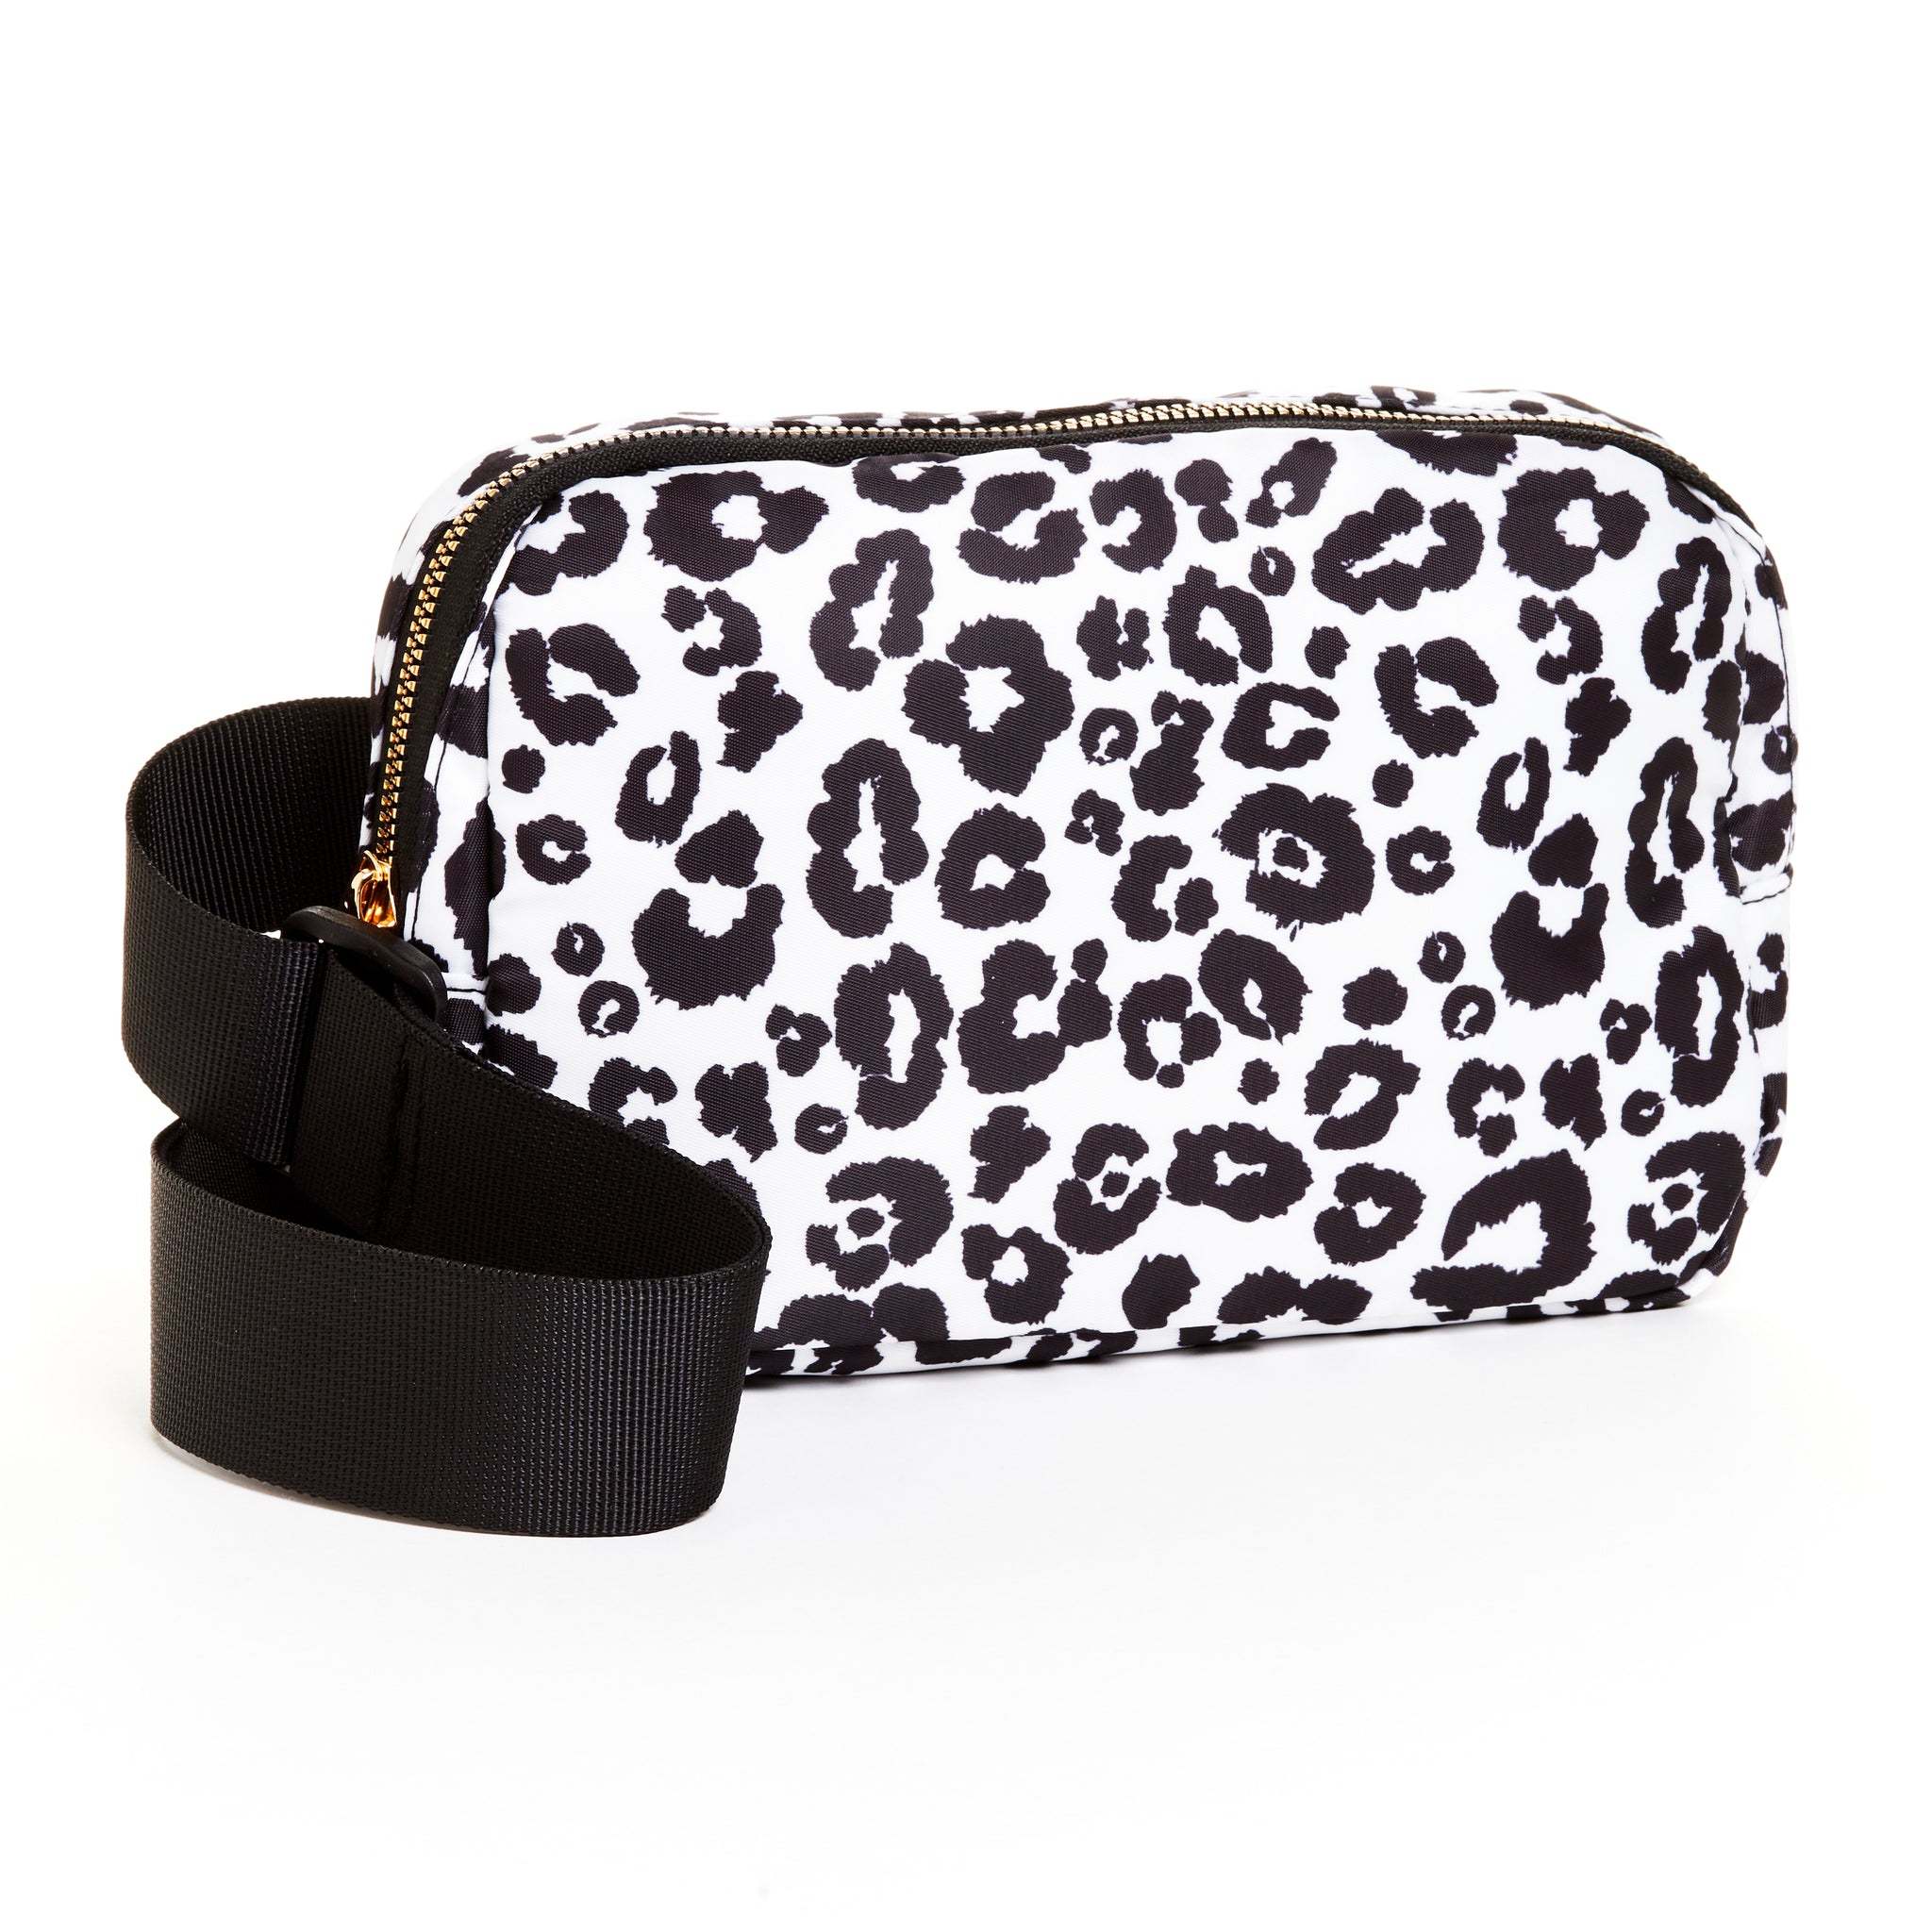 Adjustable Belt Bag - White Black Leopard